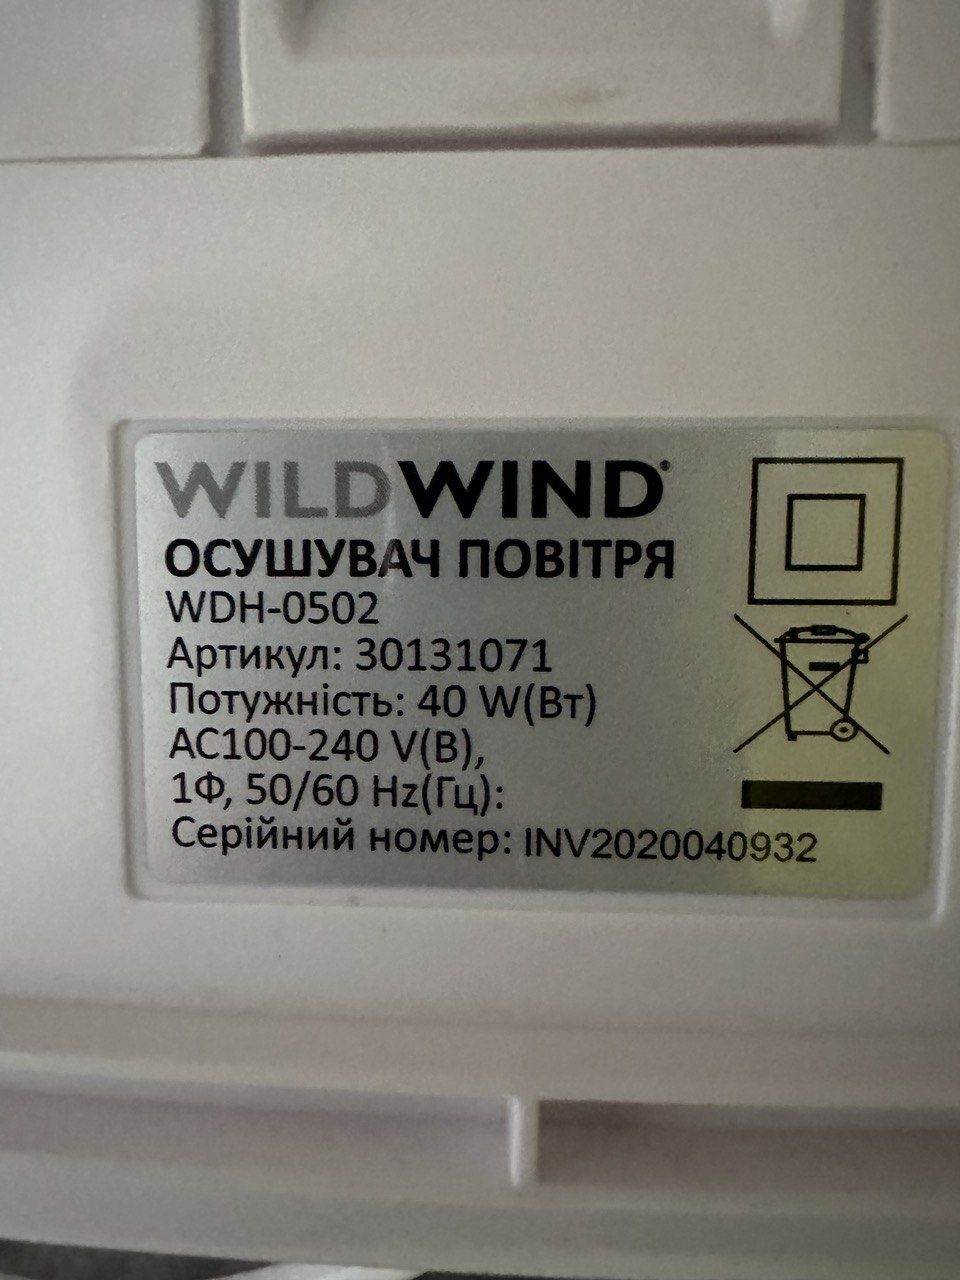 Осушувач повітря Wild Wind WDH-0502
Осушувач повітря Wild Wind шв